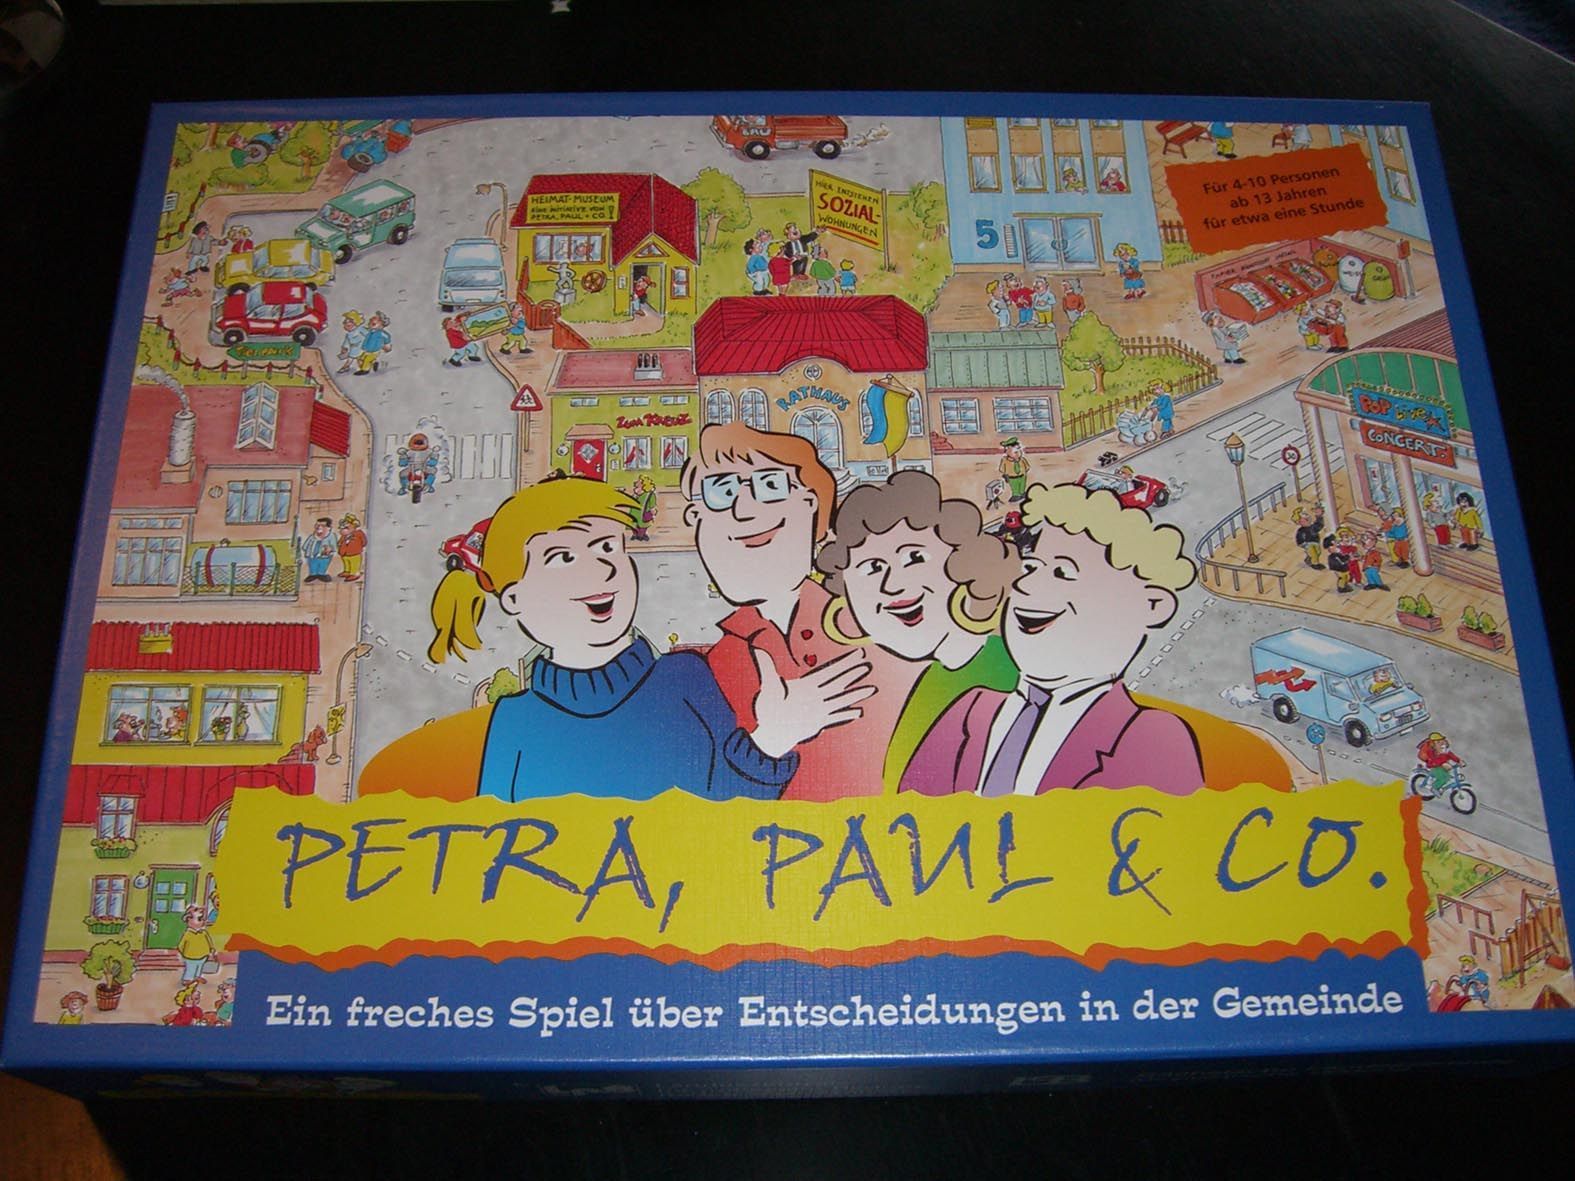 Petra, Paul & Co.